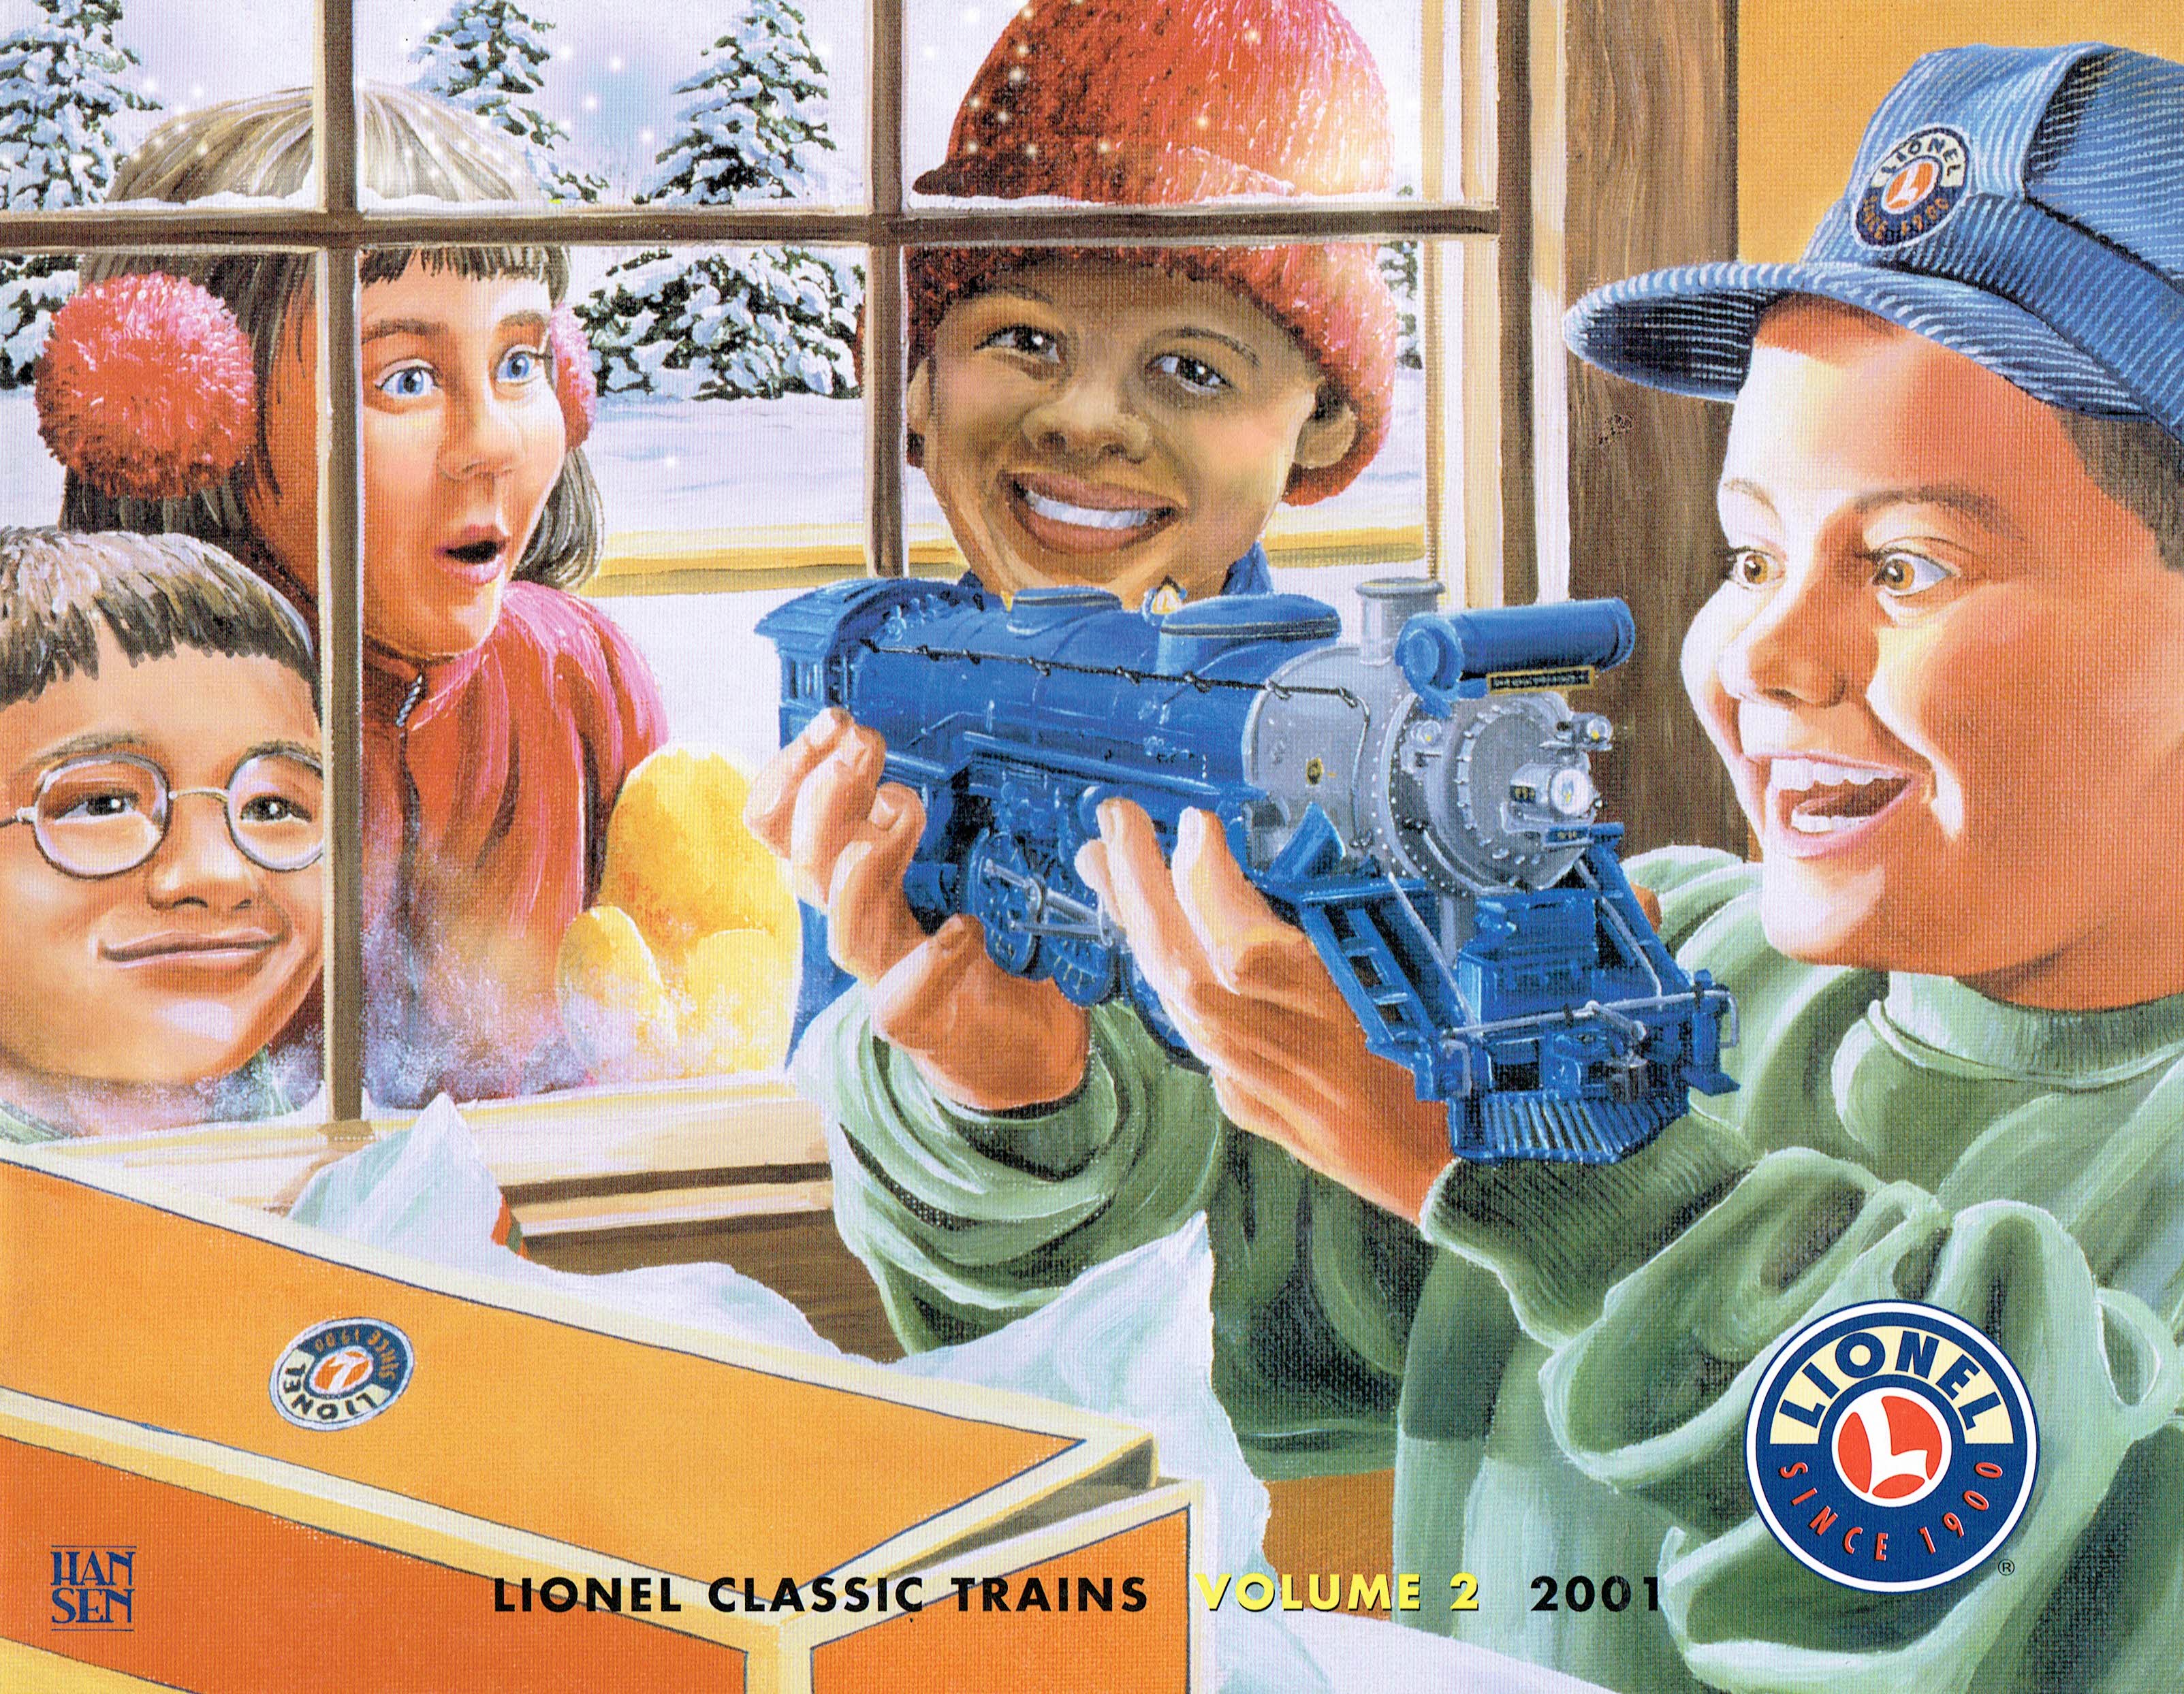 Lionel 2001 Classic Trains Volume 2 Catalog image